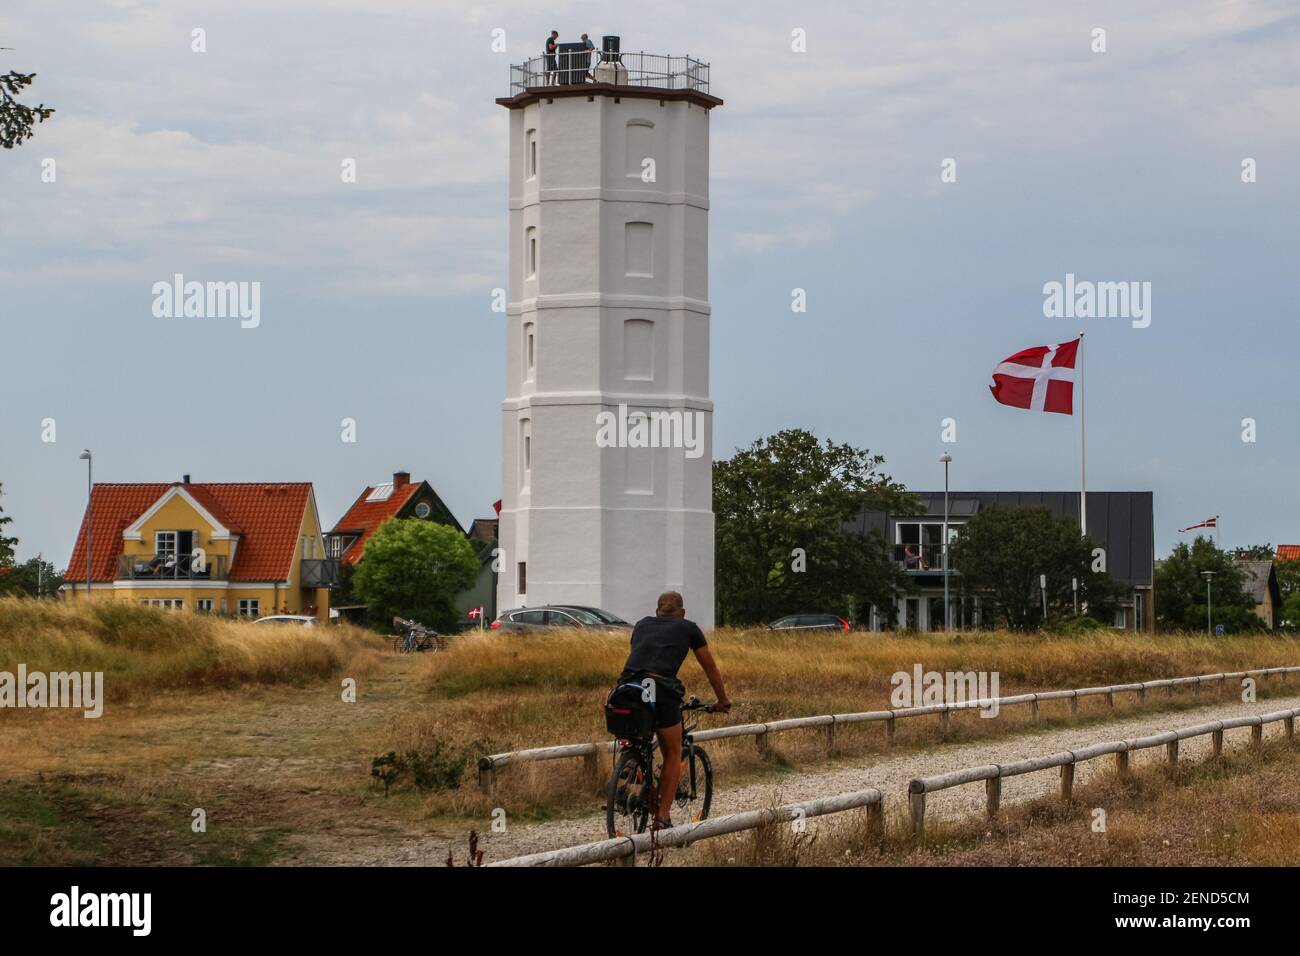 Lighthouse (Det Hvide Fyr) is seen in Skagen, Denmark on 28 July 2019 Stock  Photo - Alamy